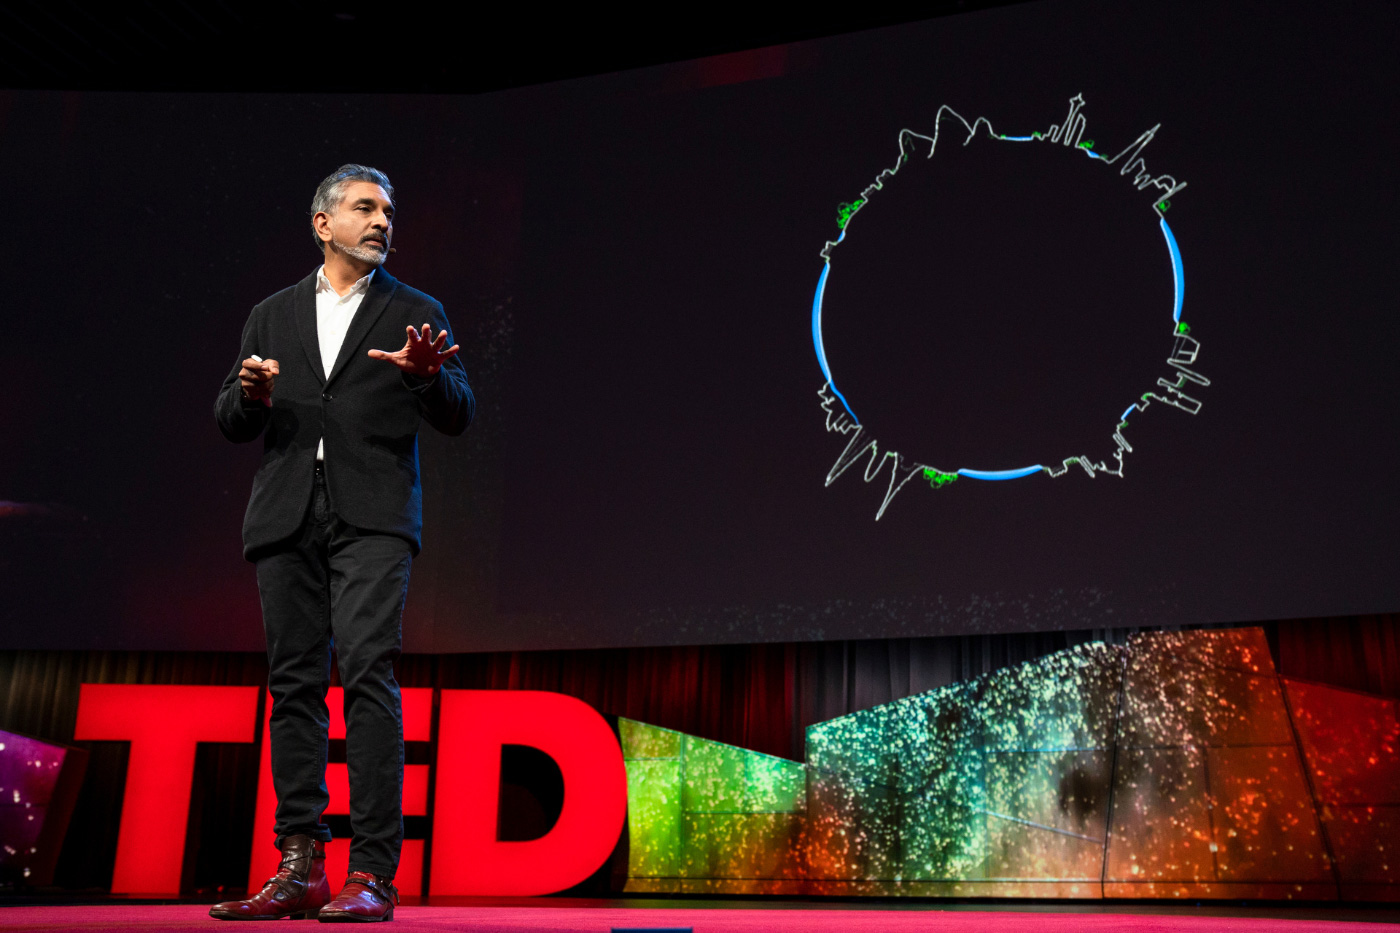 一个身穿黑色西装的印度人站在舞台上，上面用大字写着“TED”